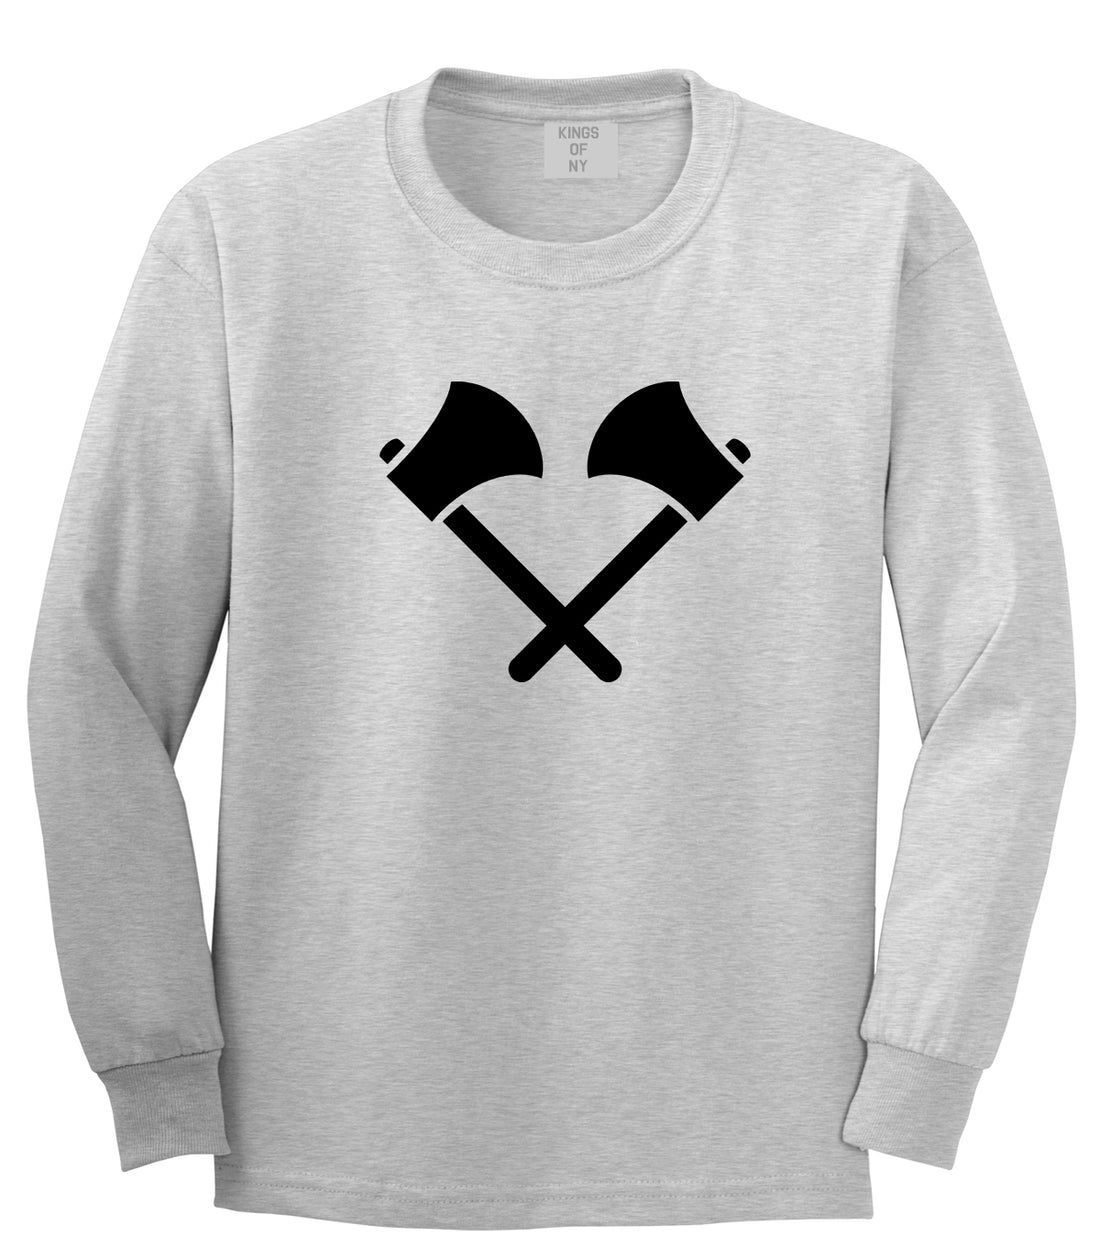 2 Ax Fireman Logo Grey Long Sleeve T-Shirt by Kings Of NY